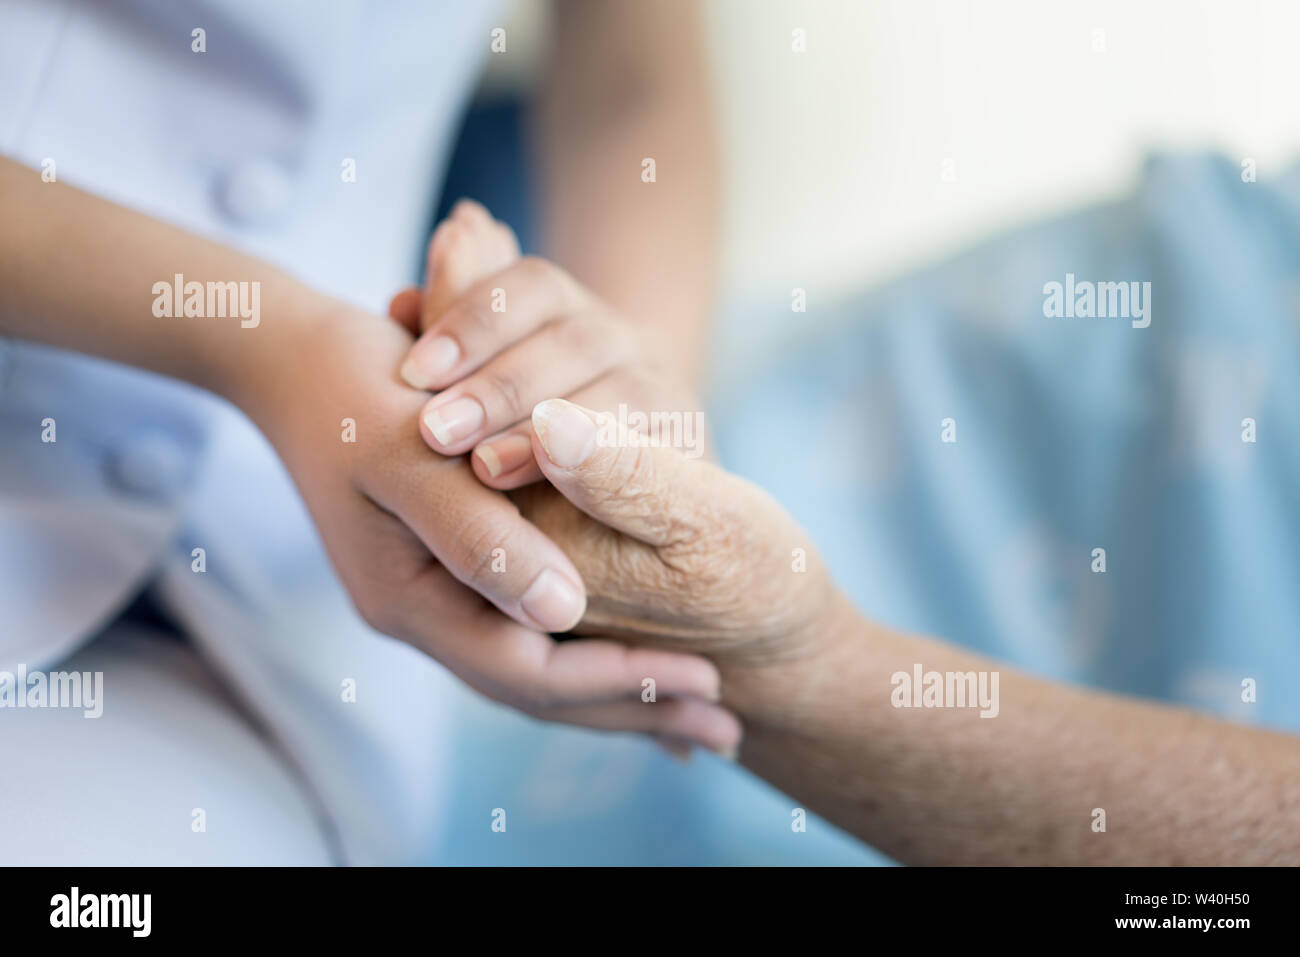 Krankenschwester Sitzen Auf Einem Krankenhausbett Neben Eine Altere Frau Helfende Hande Die Altenpflege Konzept Stockfotografie Alamy